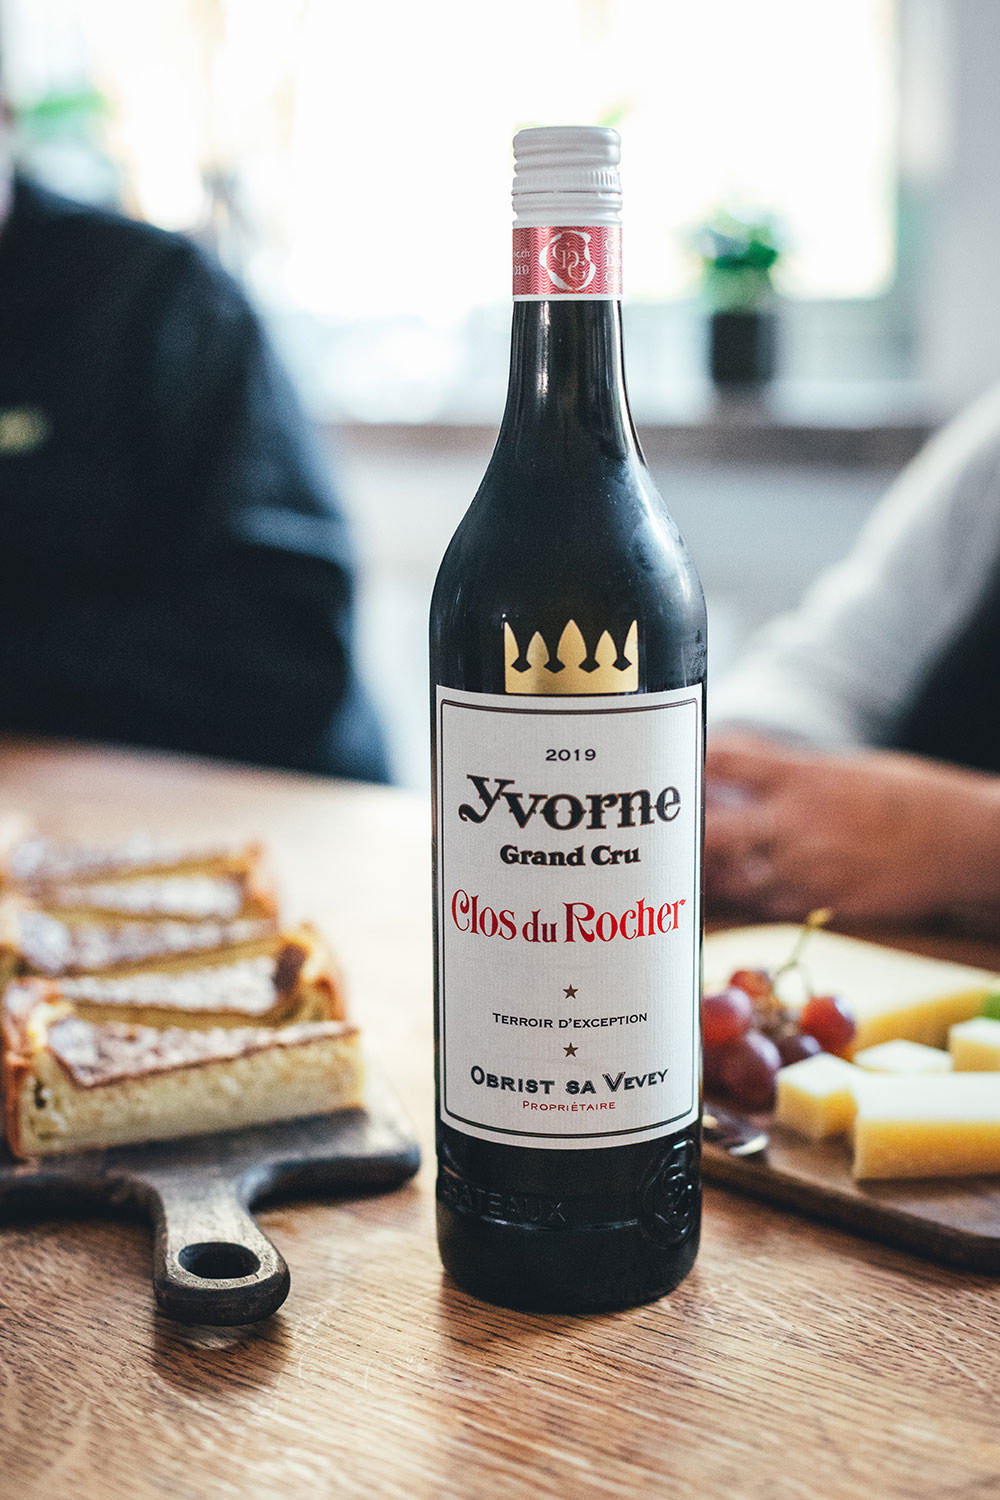 Rezept für Schweizer Käsewähe mit Gruyère und Schweizer Emmentaler. Würzige Käsetarte, die hervorragend zu einem Schweizer Weißwein wie dem Clos du Rocher Grand Cru Yvorne AOC 2019 passt. | moeyskitchen.com